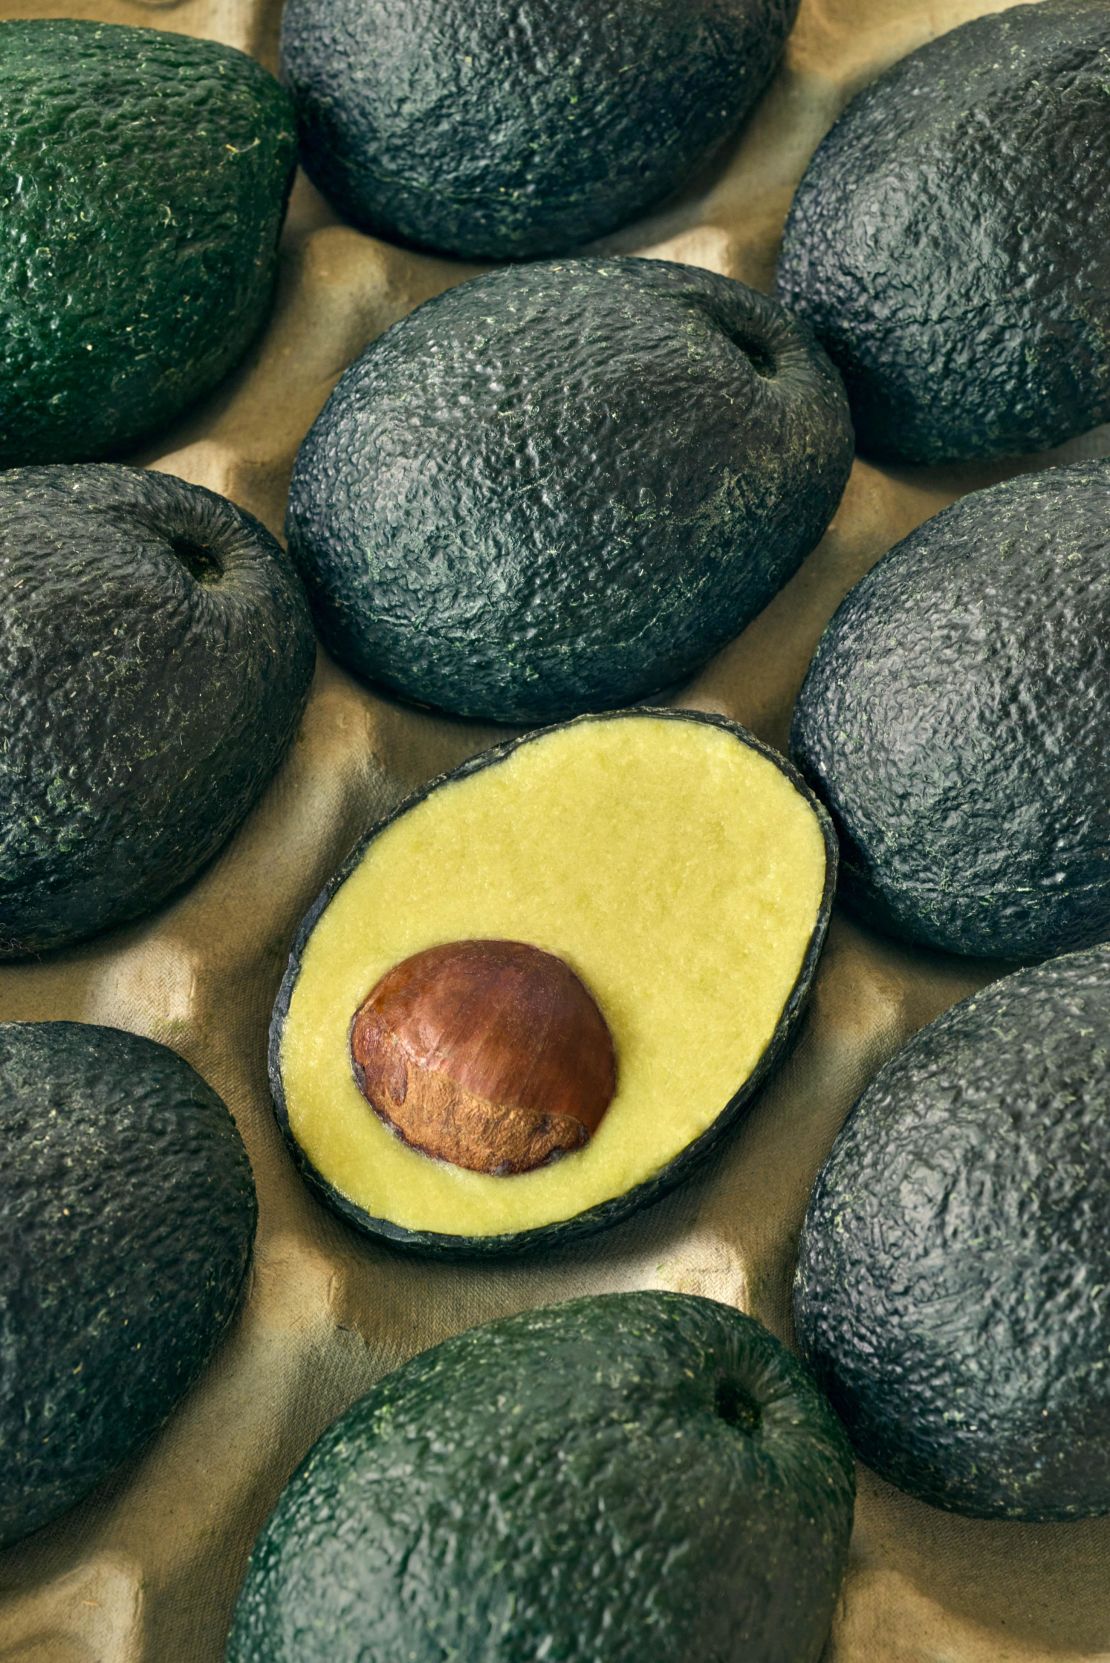 Designed by Arina Shokouhi, the Ecovado looks a lot like a real avocado. 